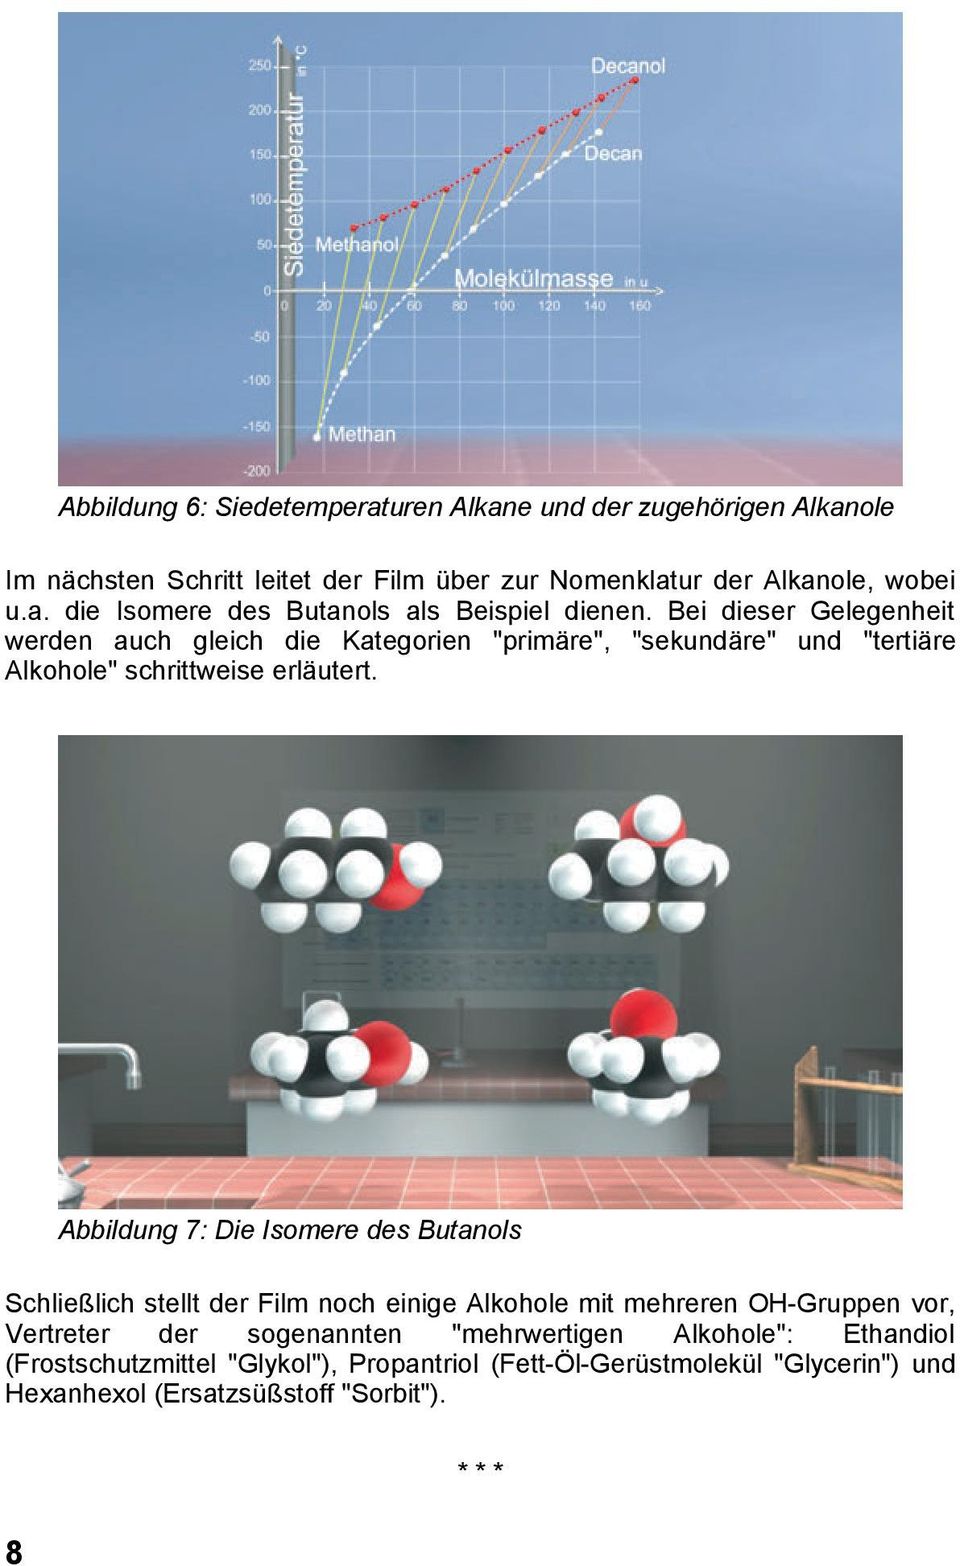 Abbildung 7: Die Isomere des Butanols Schließlich stellt der Film noch einige Alkohole mit mehreren OH-Gruppen vor, Vertreter der sogenannten "mehrwertigen